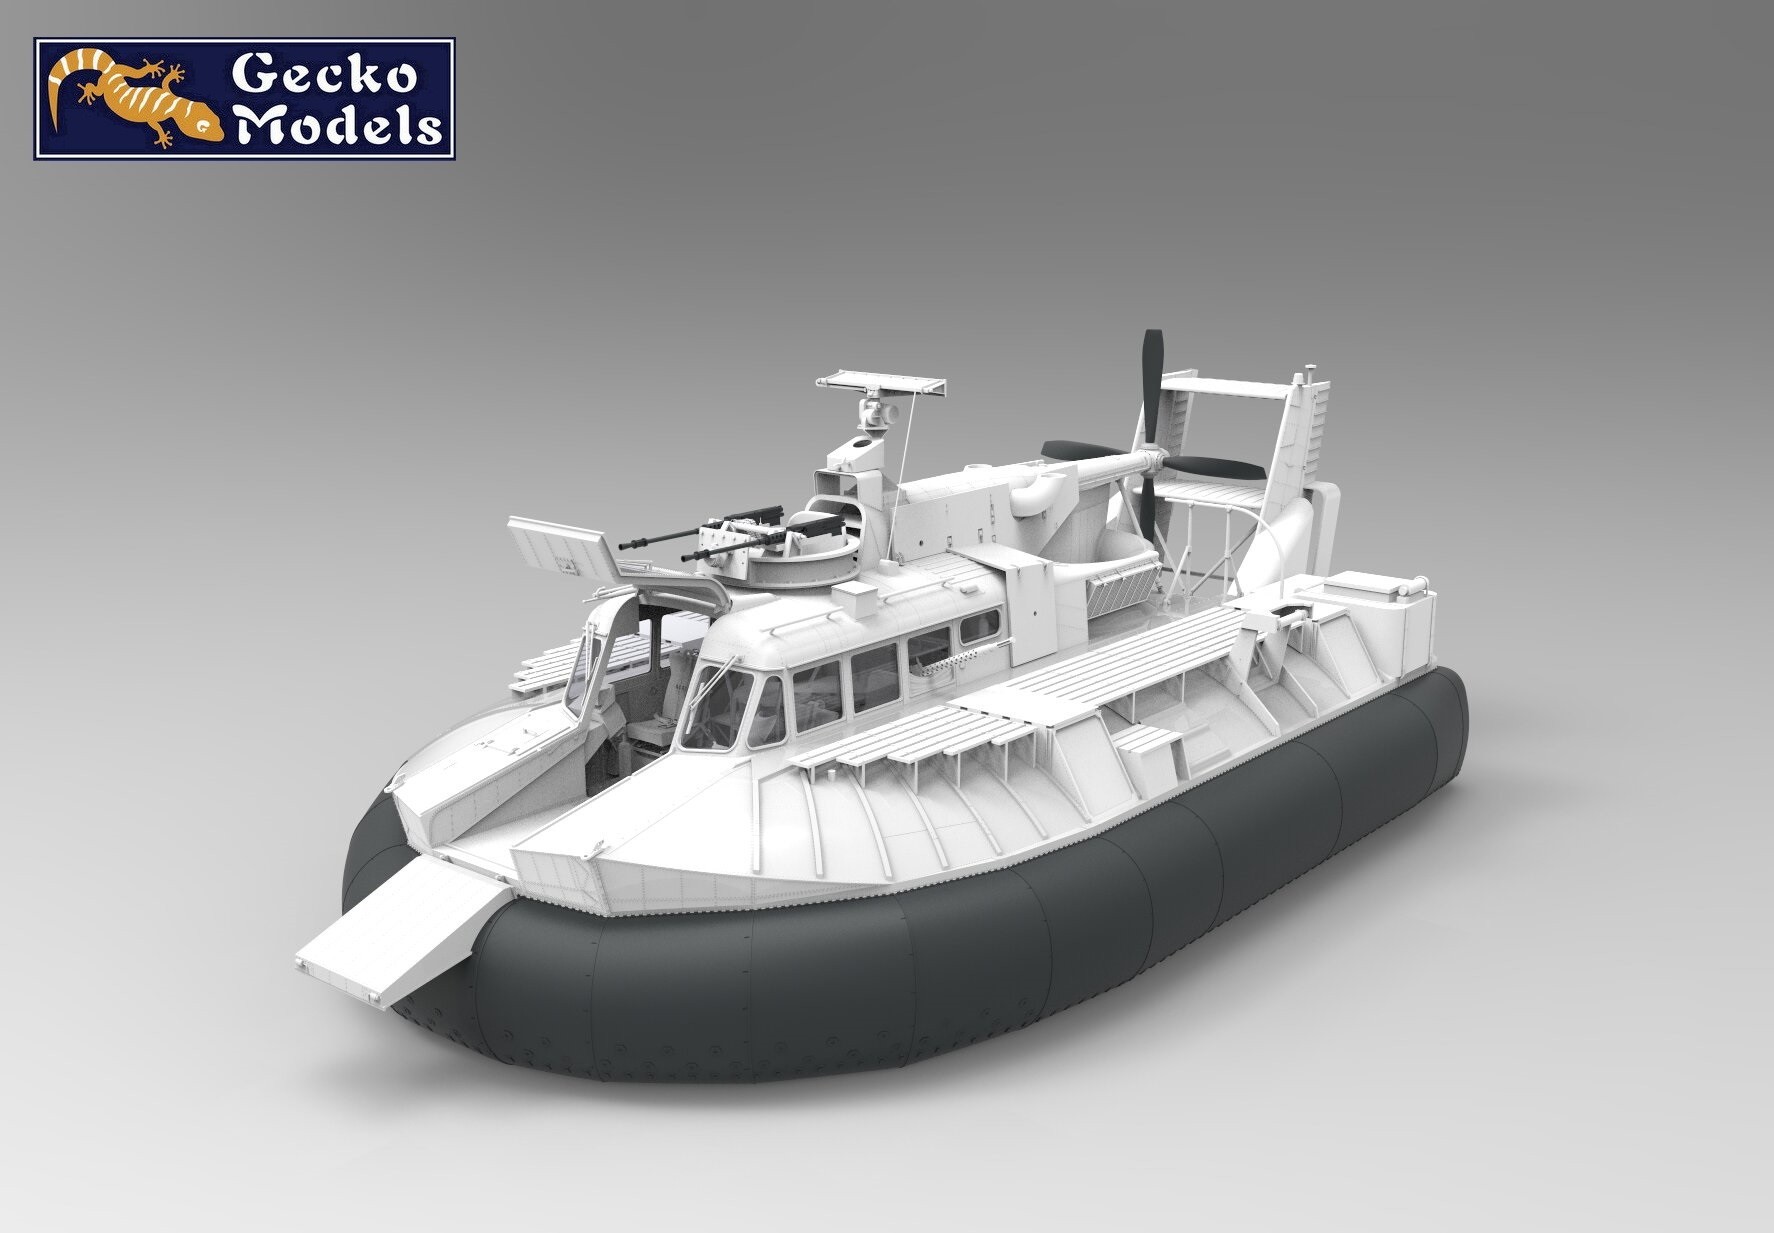 Gecko Models Announces Unique 1/35 Scale SK-5 PACV Model CAD-5